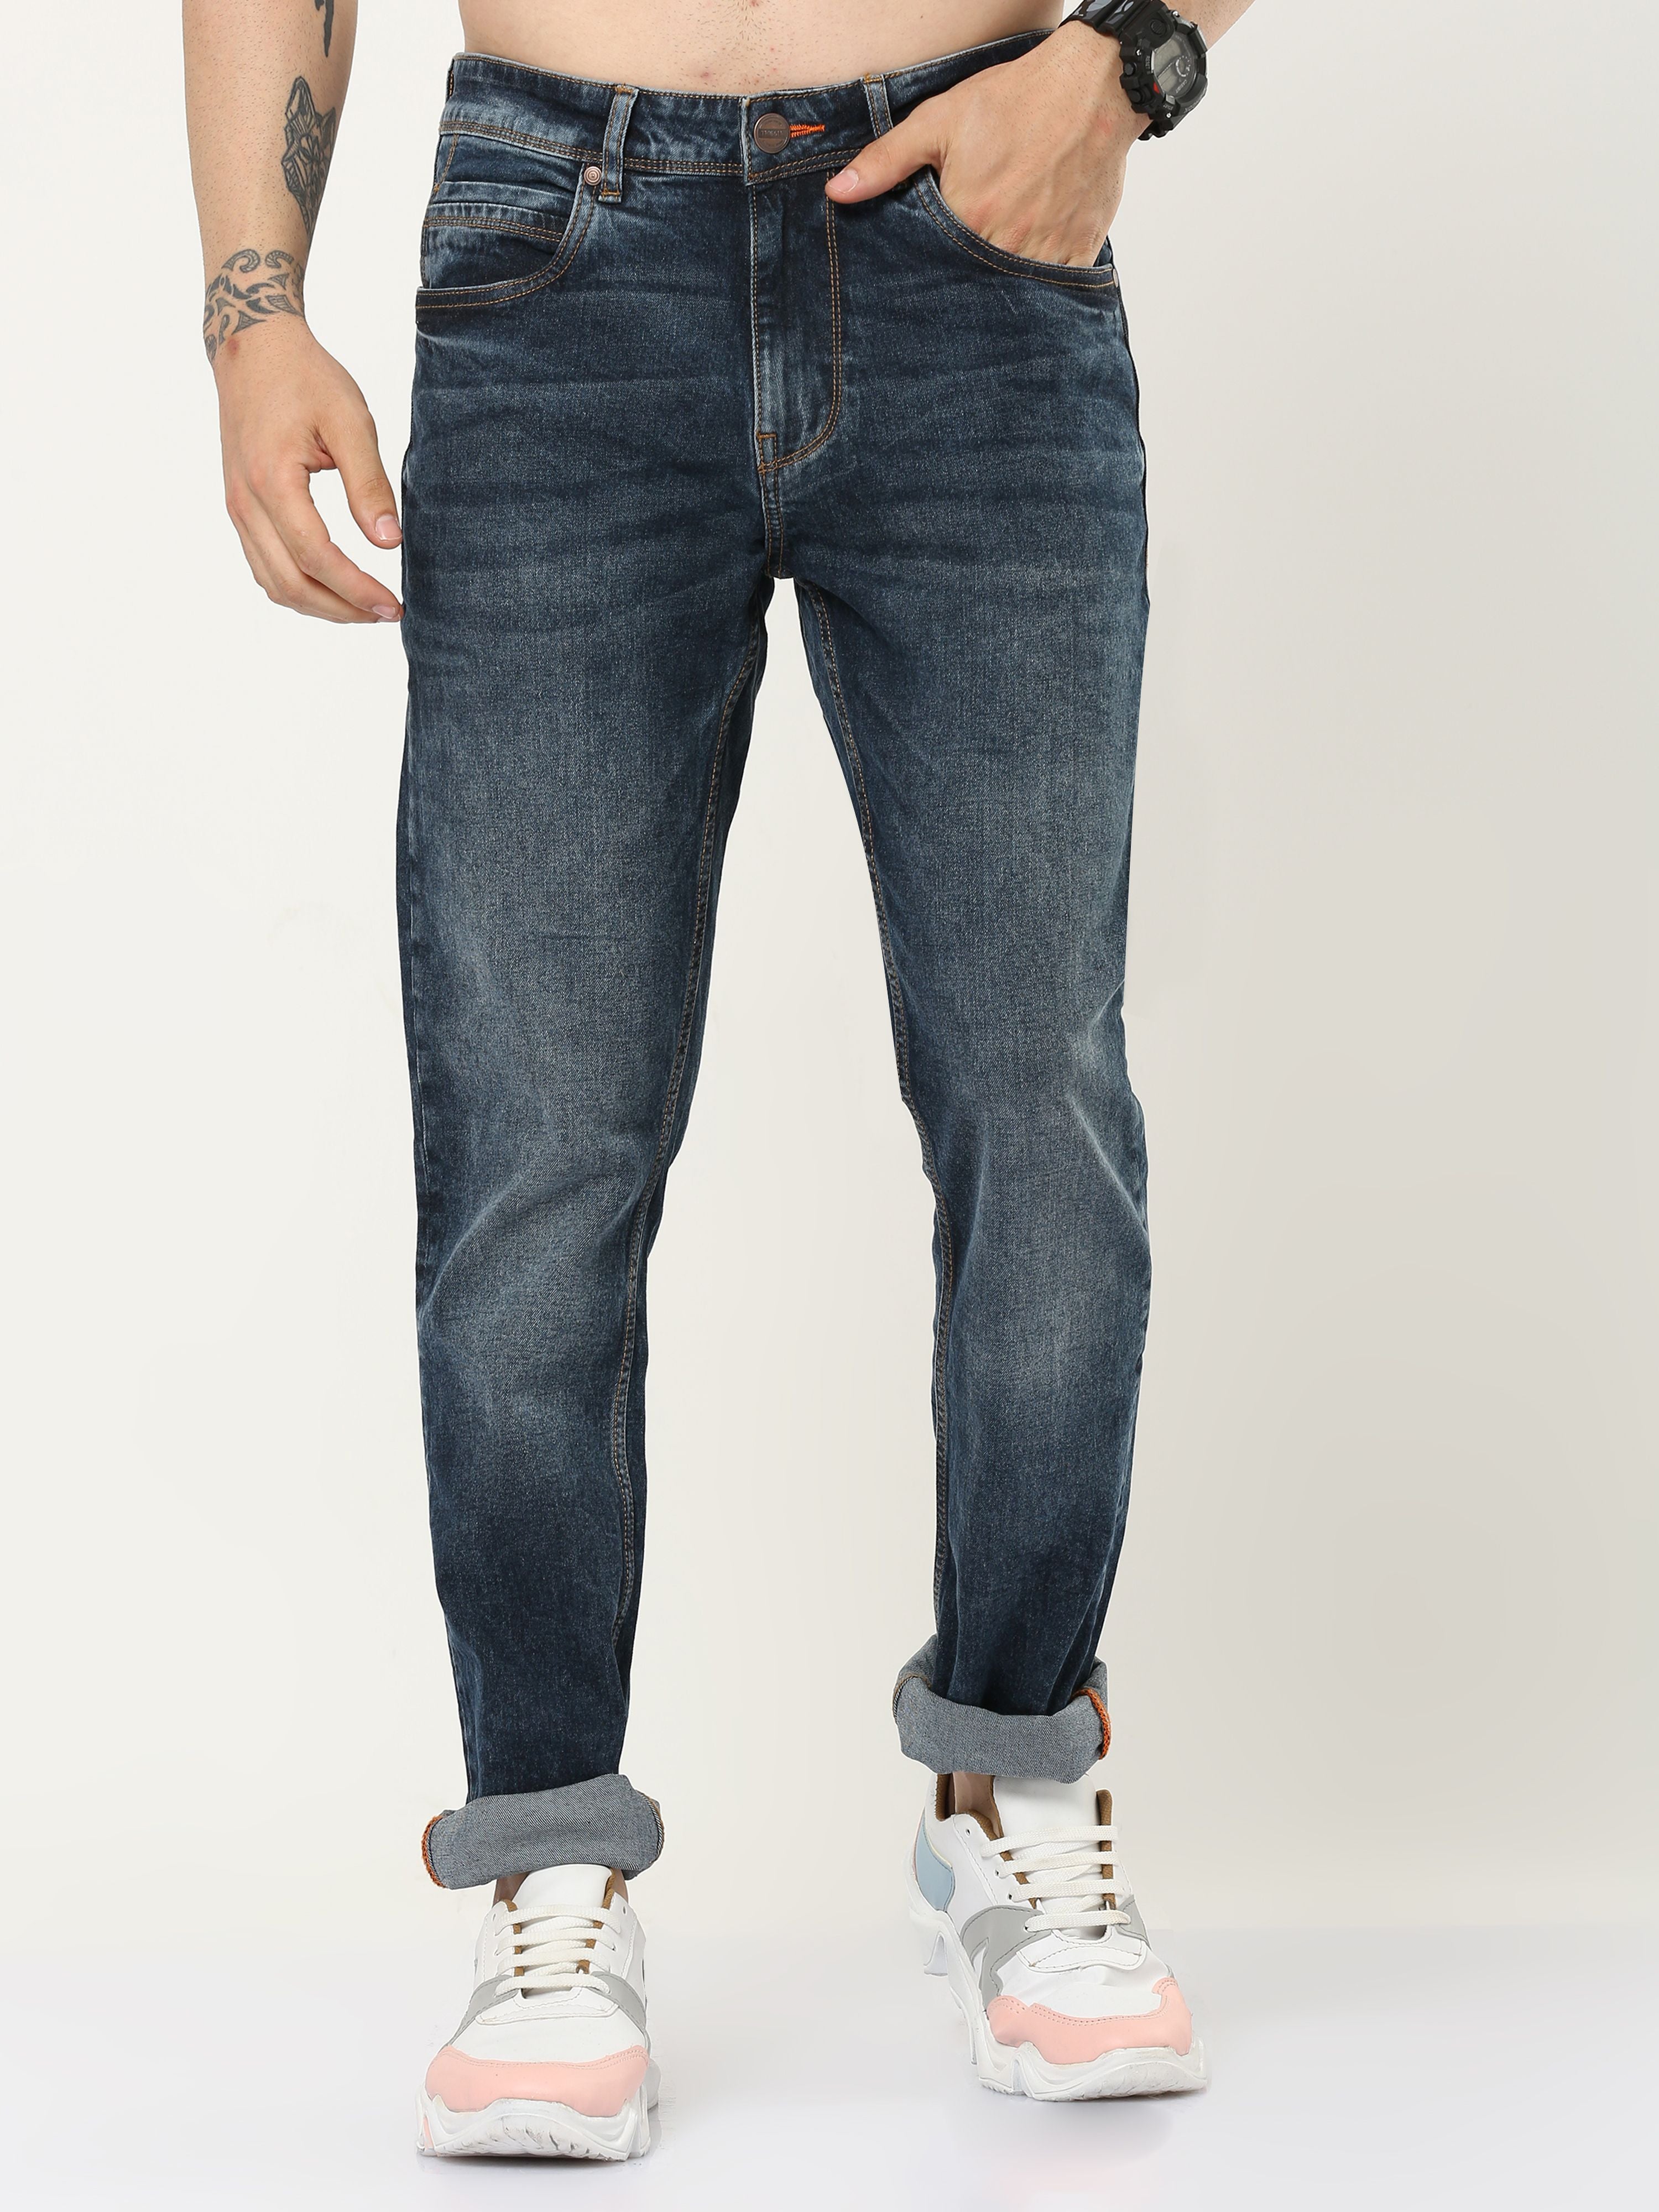 Active Motion Men's Slim Fit Jeans